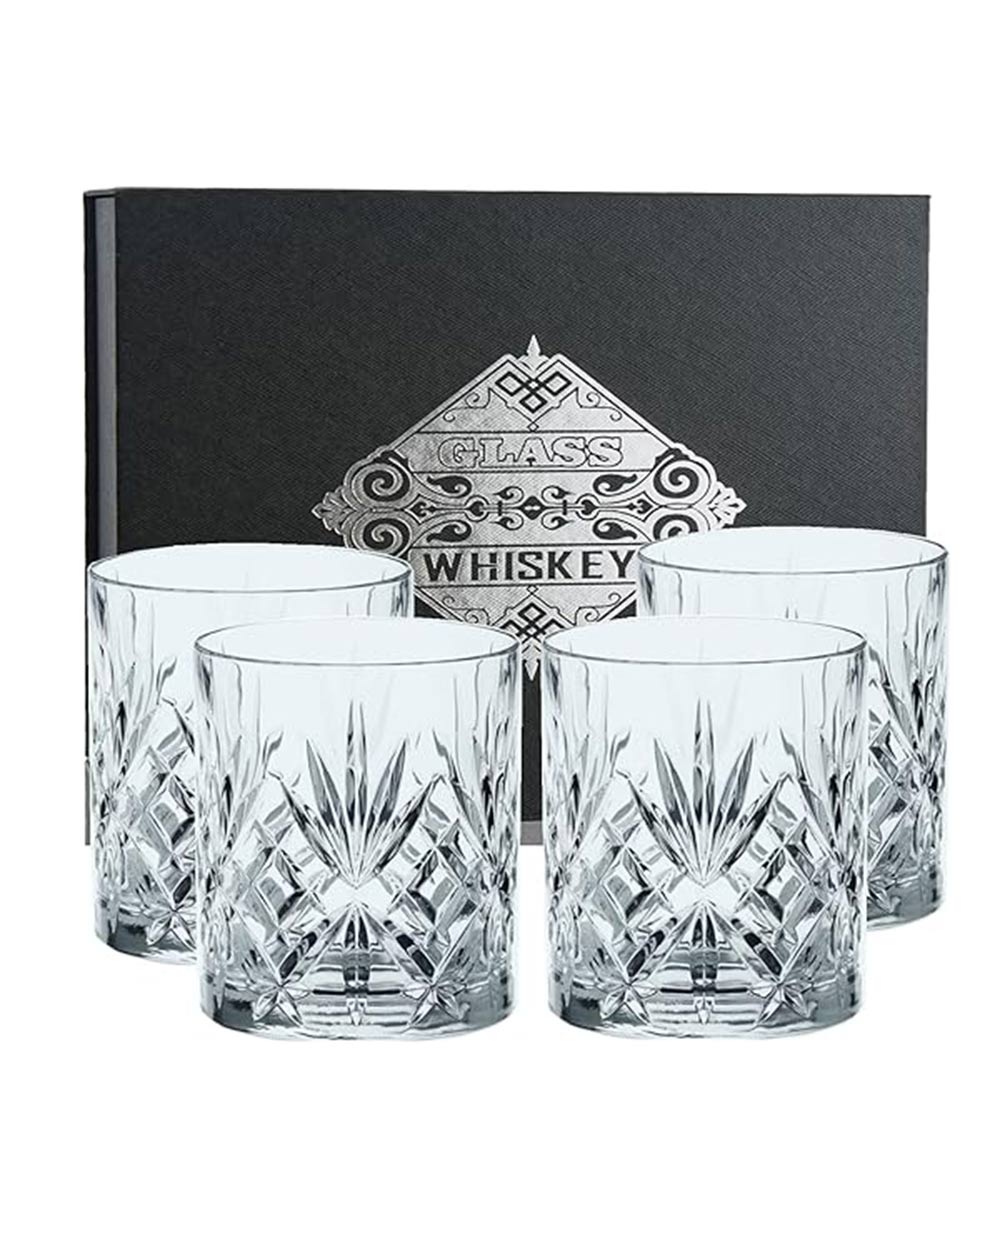 D&H Whiskey Glasses Set of 4 Gift Box